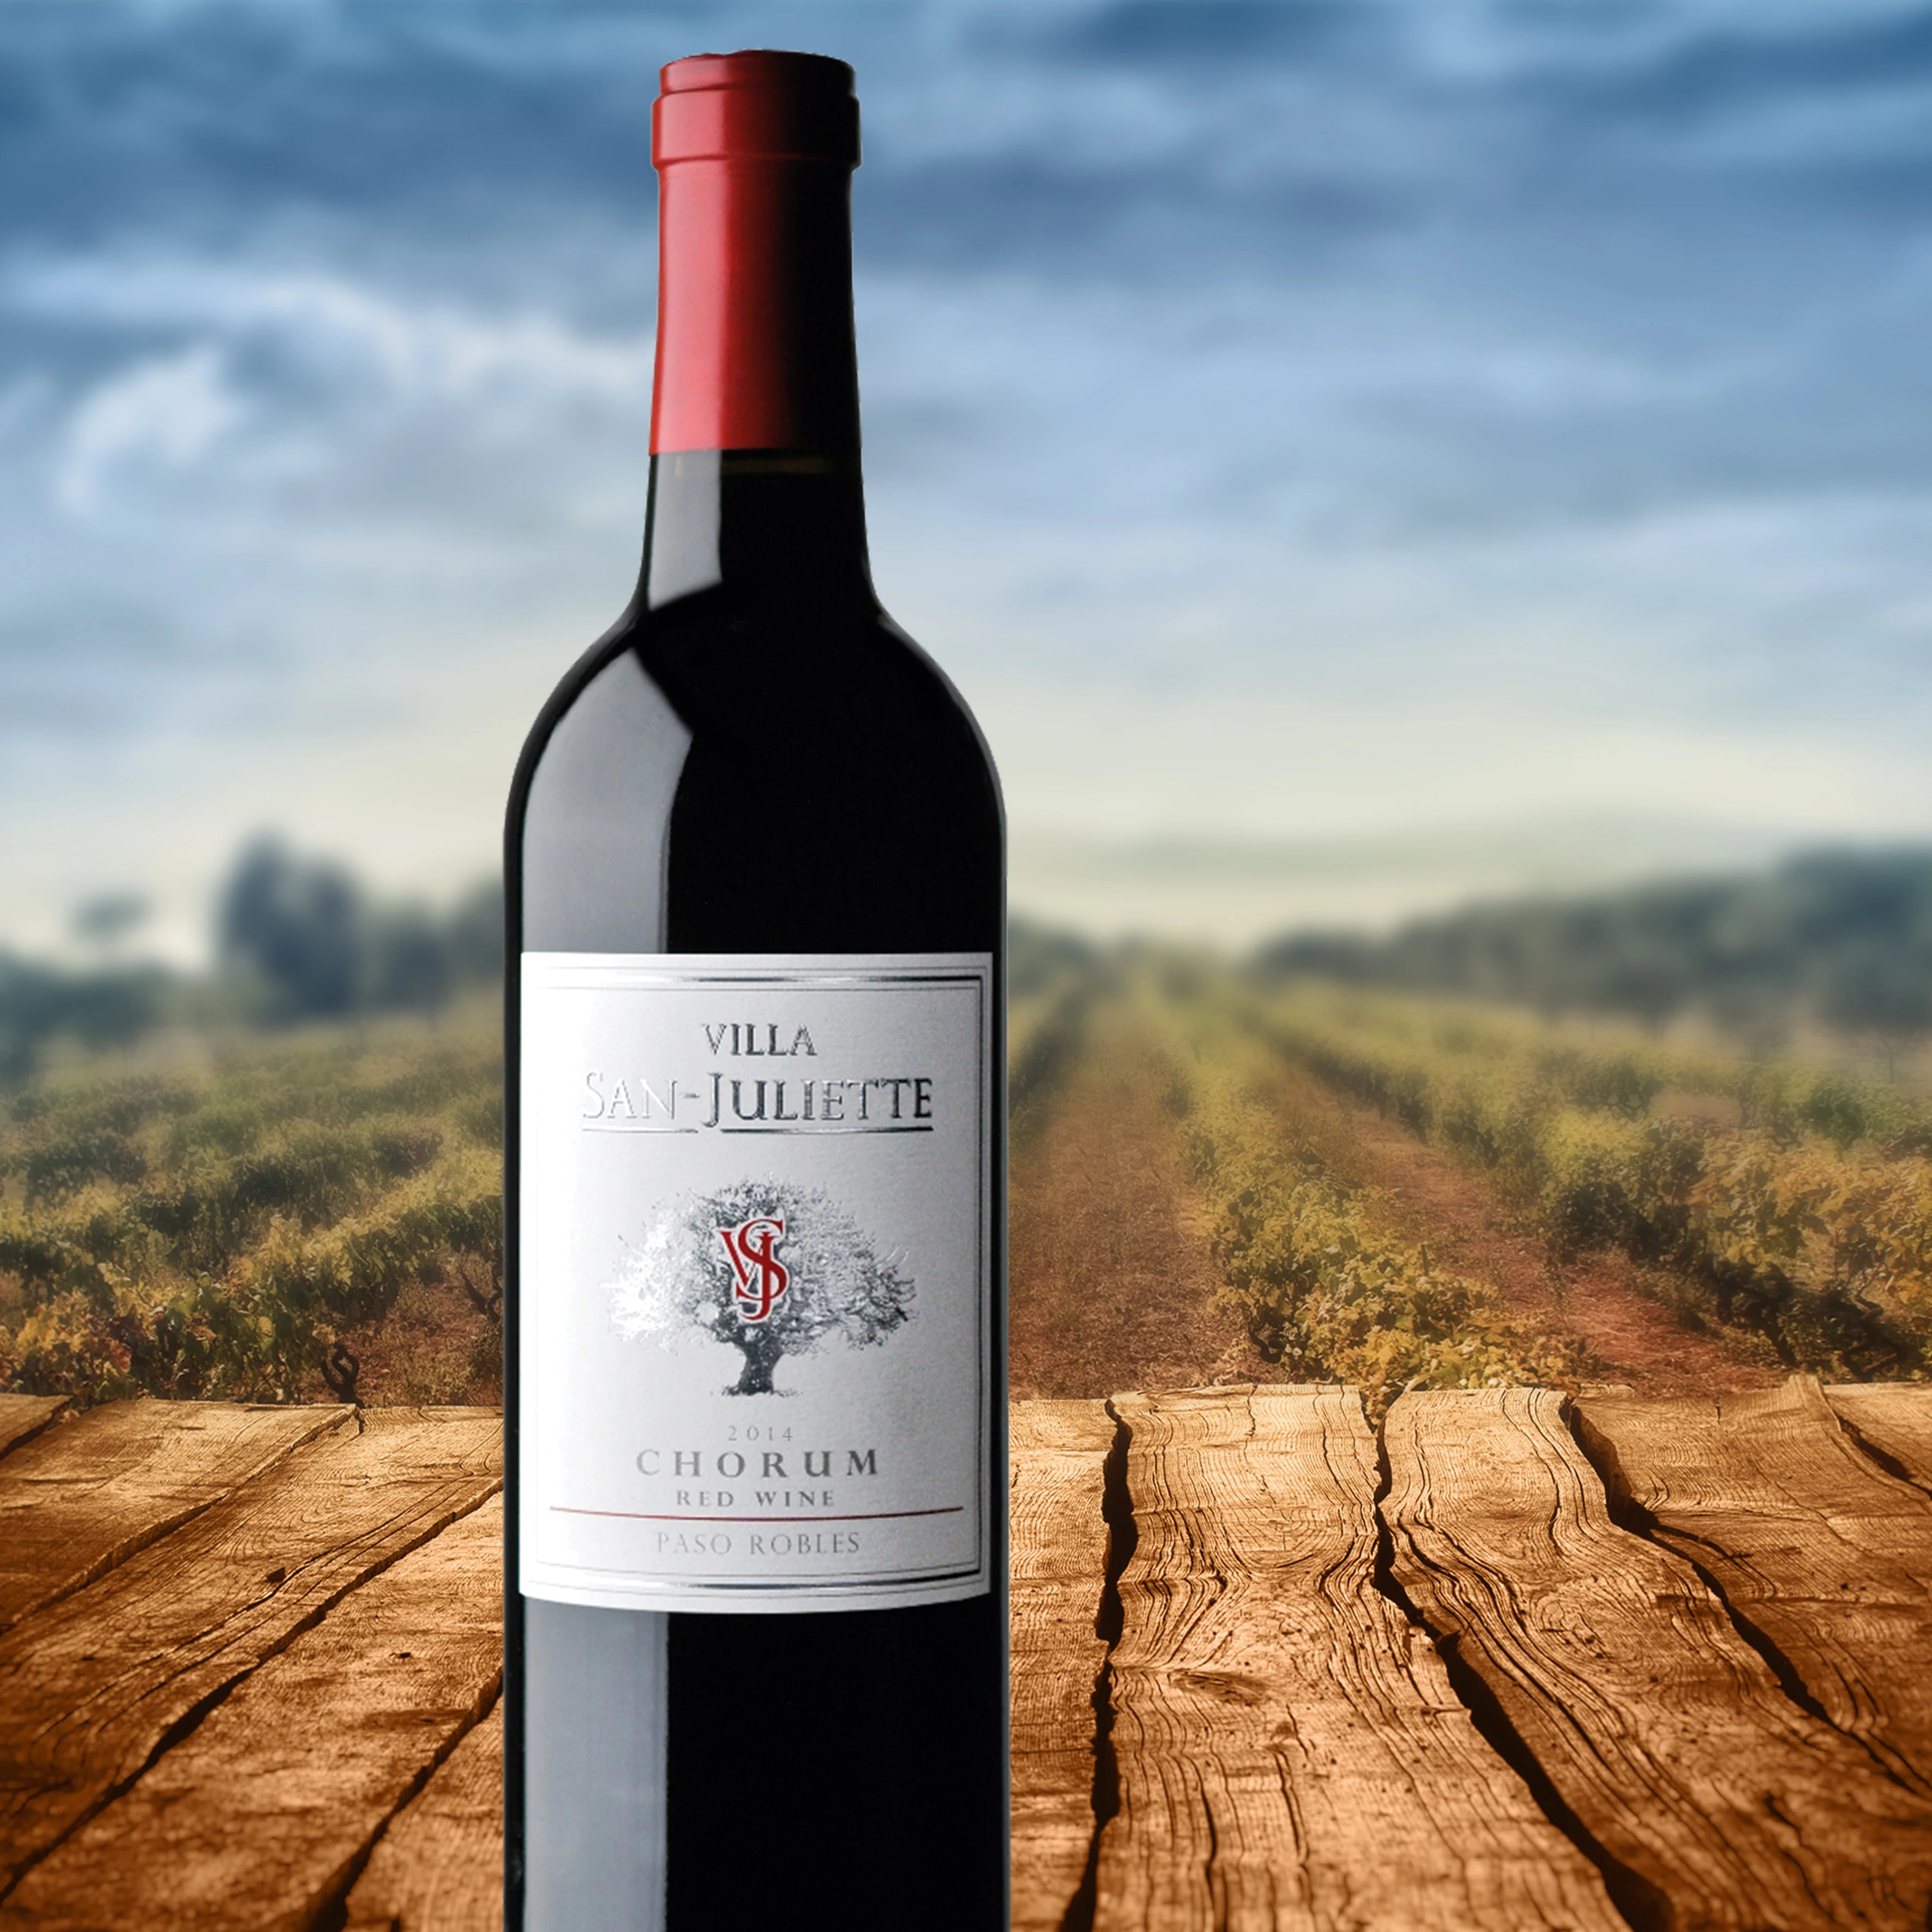 推荐圣朱丽叶珍藏和谐混酿干红葡萄酒 2014 | VSJ Chorum Red Wine 2014 (Paso Robles, CA）商品